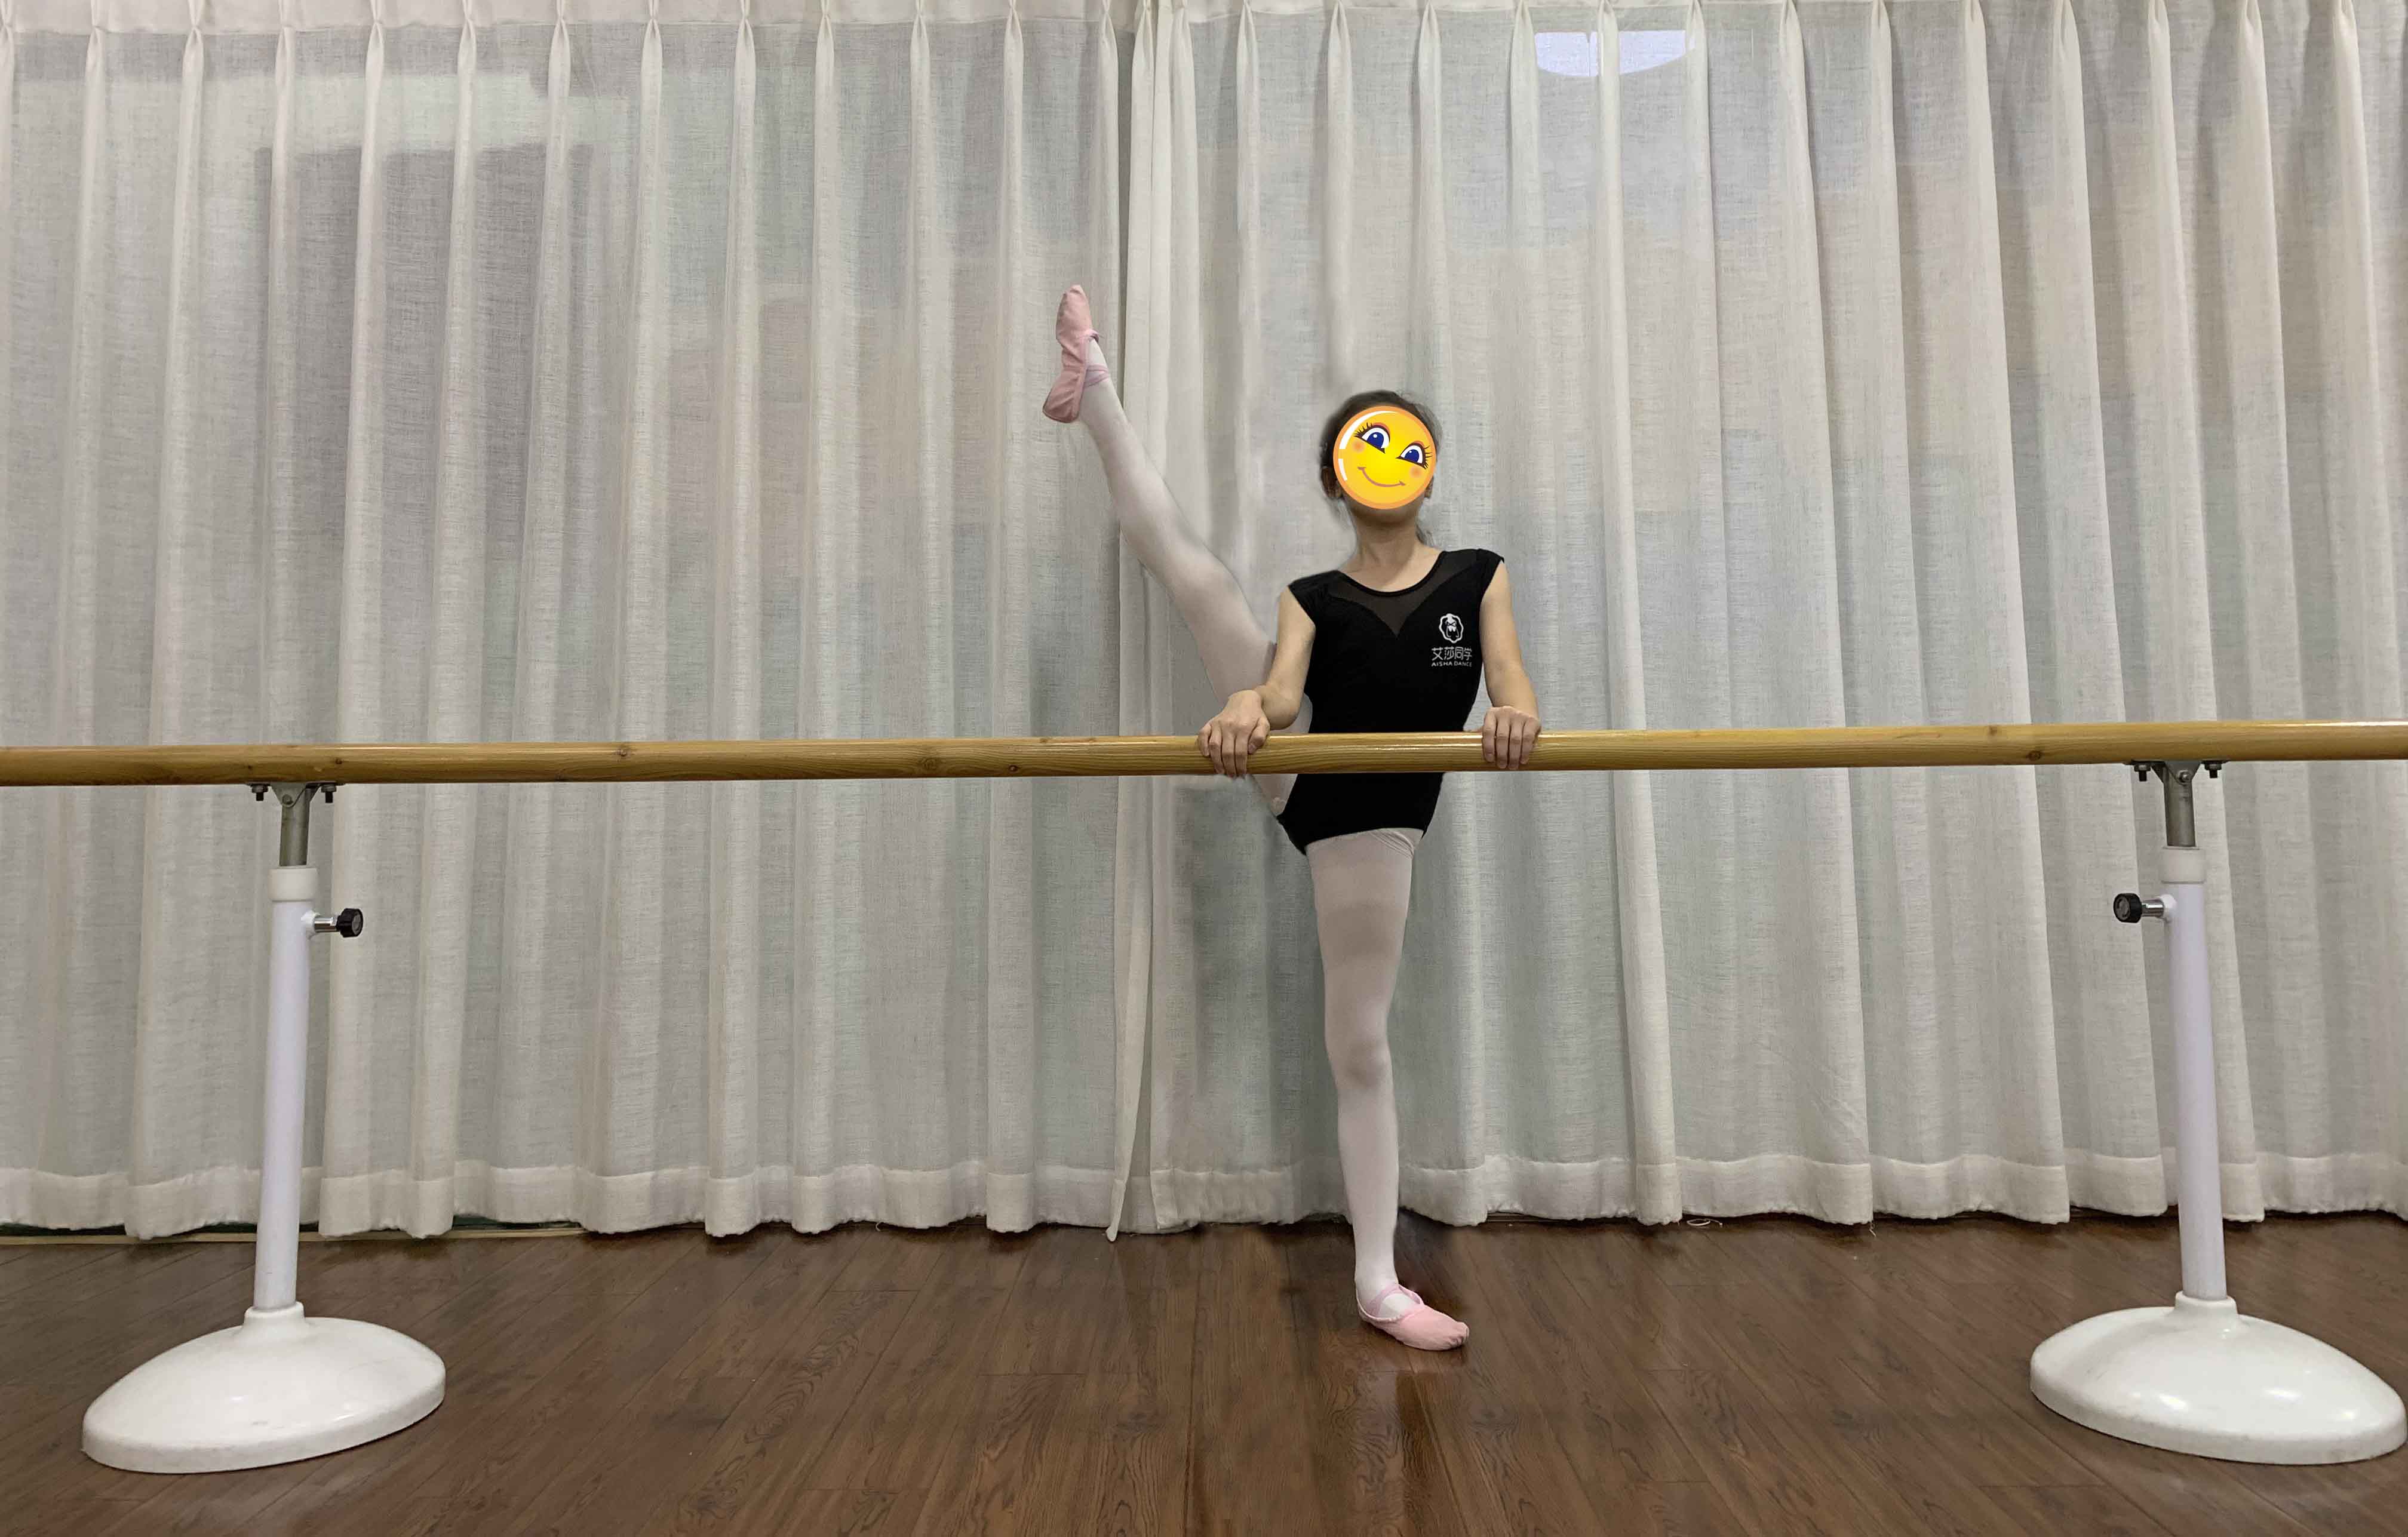 艾莎同学小课堂舞蹈动作之把上踢旁腿的训练方法附图示